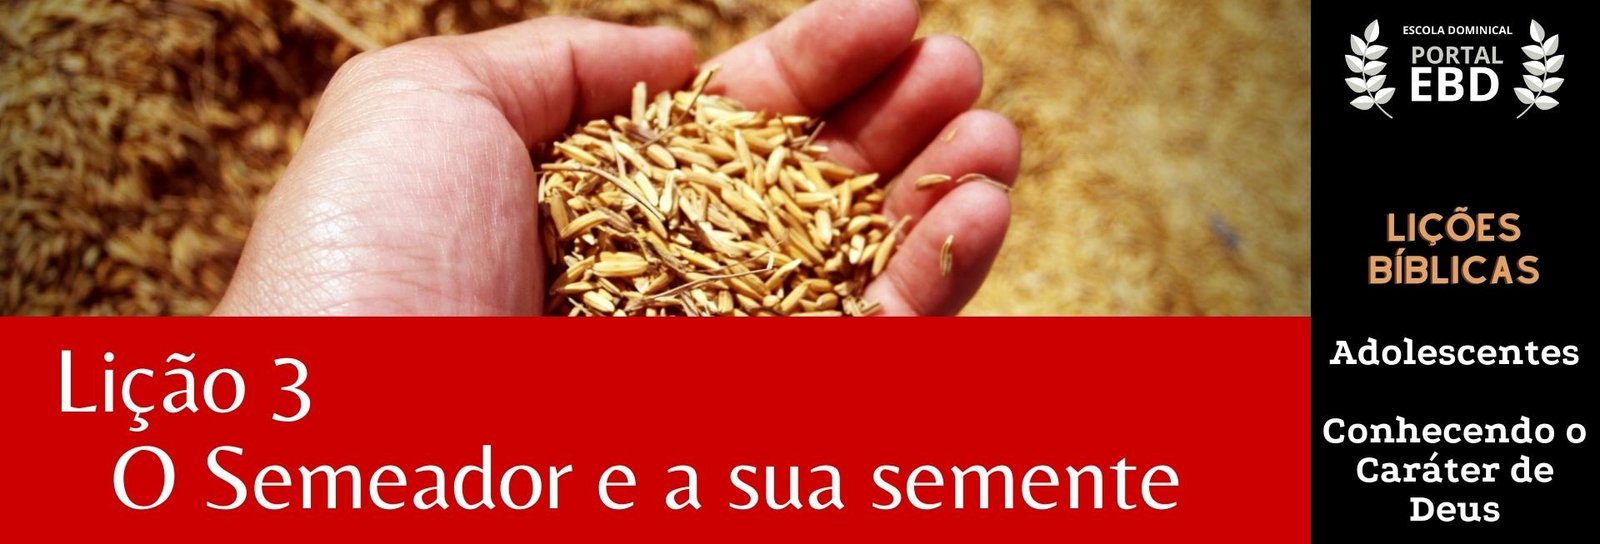 Lição 3 - O semeador e a sua semente - SLIDES E VIDEOAULAS